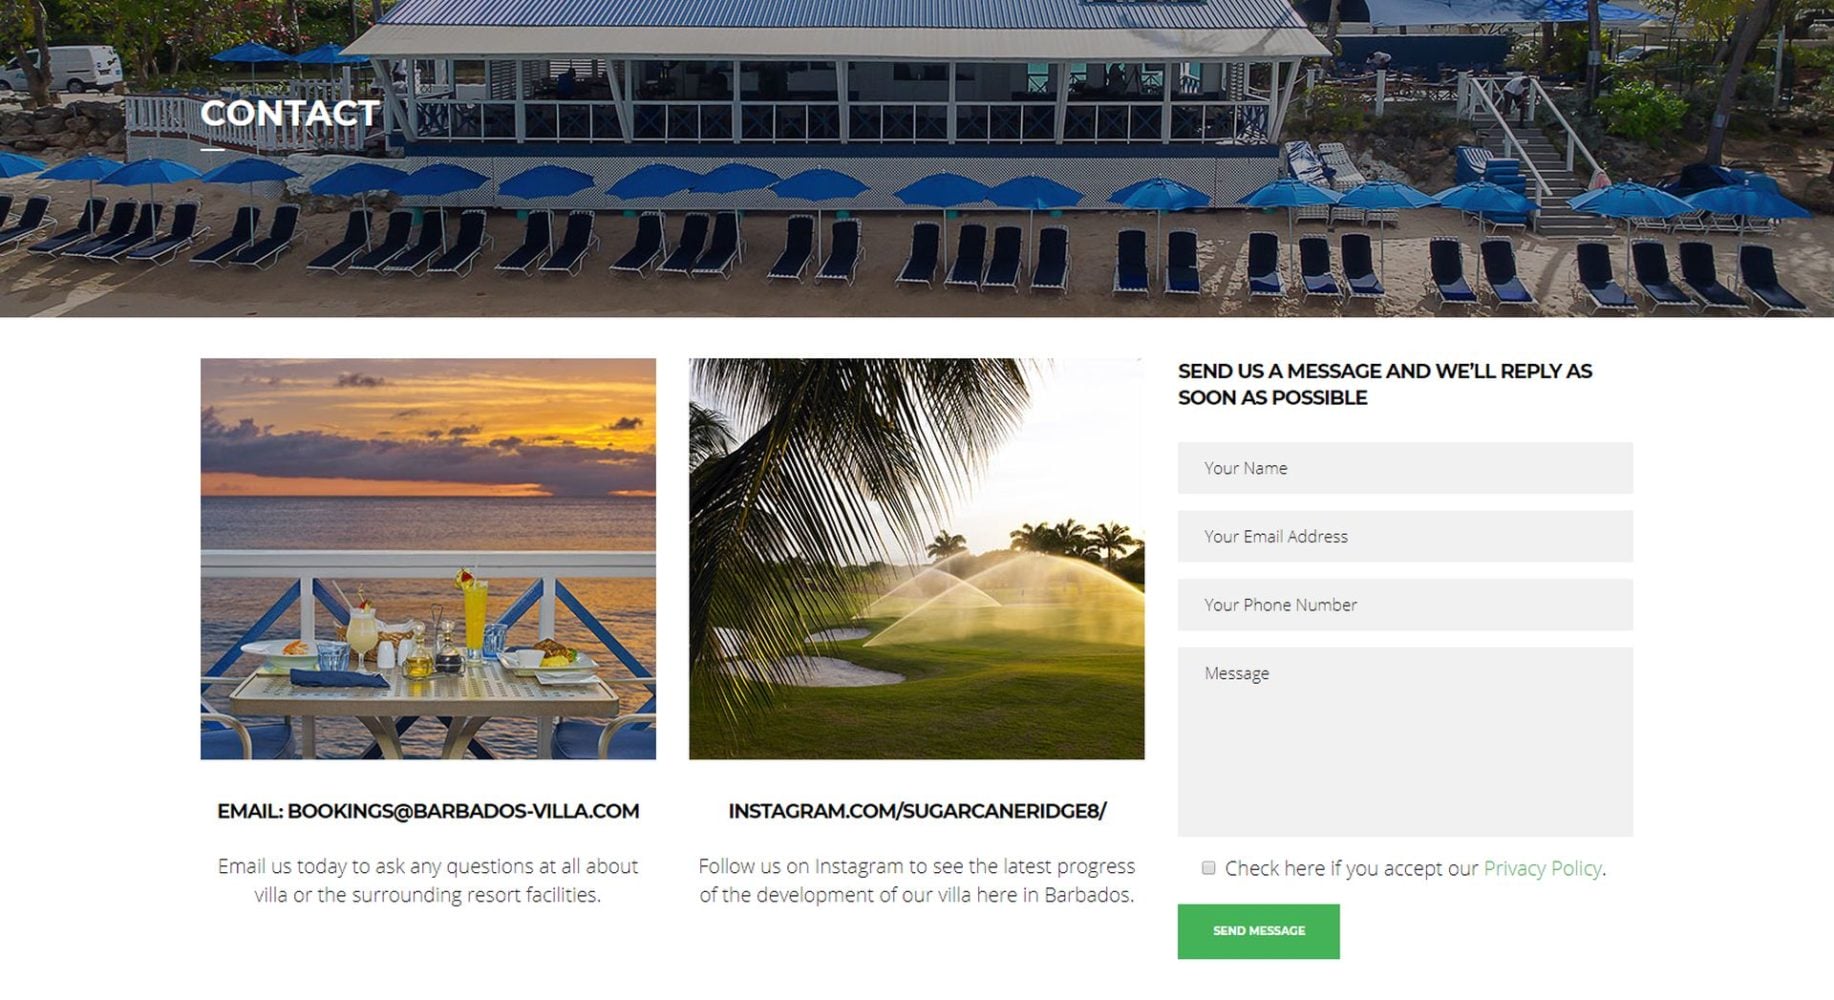 Barbados Villa Website Design Contact